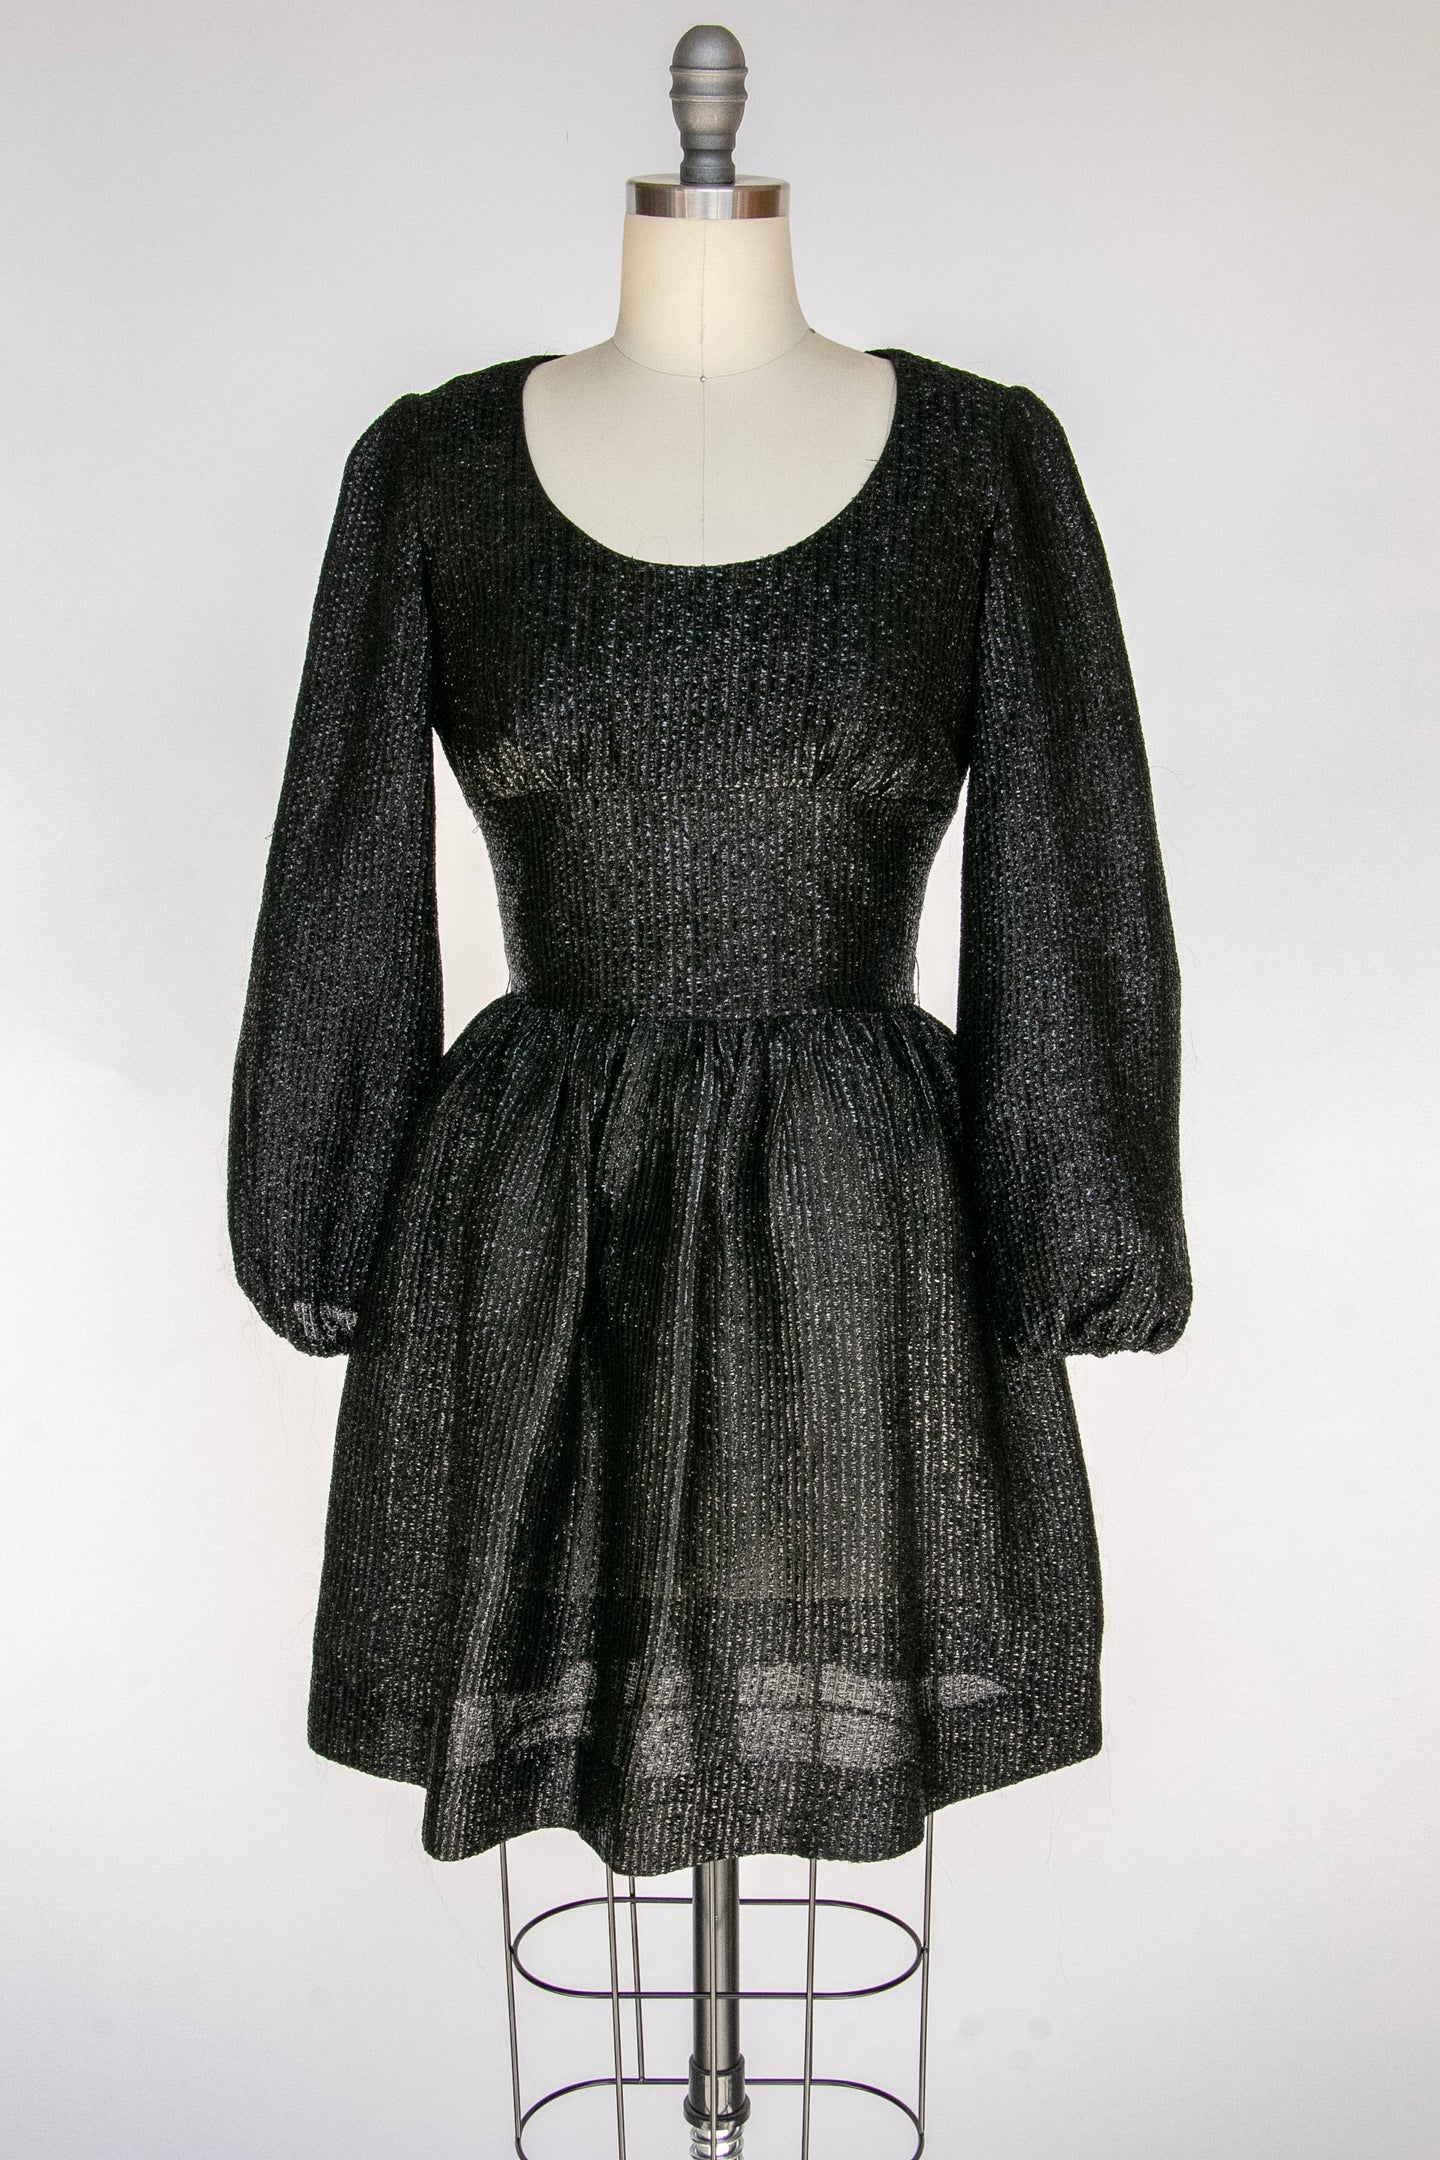 1960s Dress Black Metallic Mod Mini XS